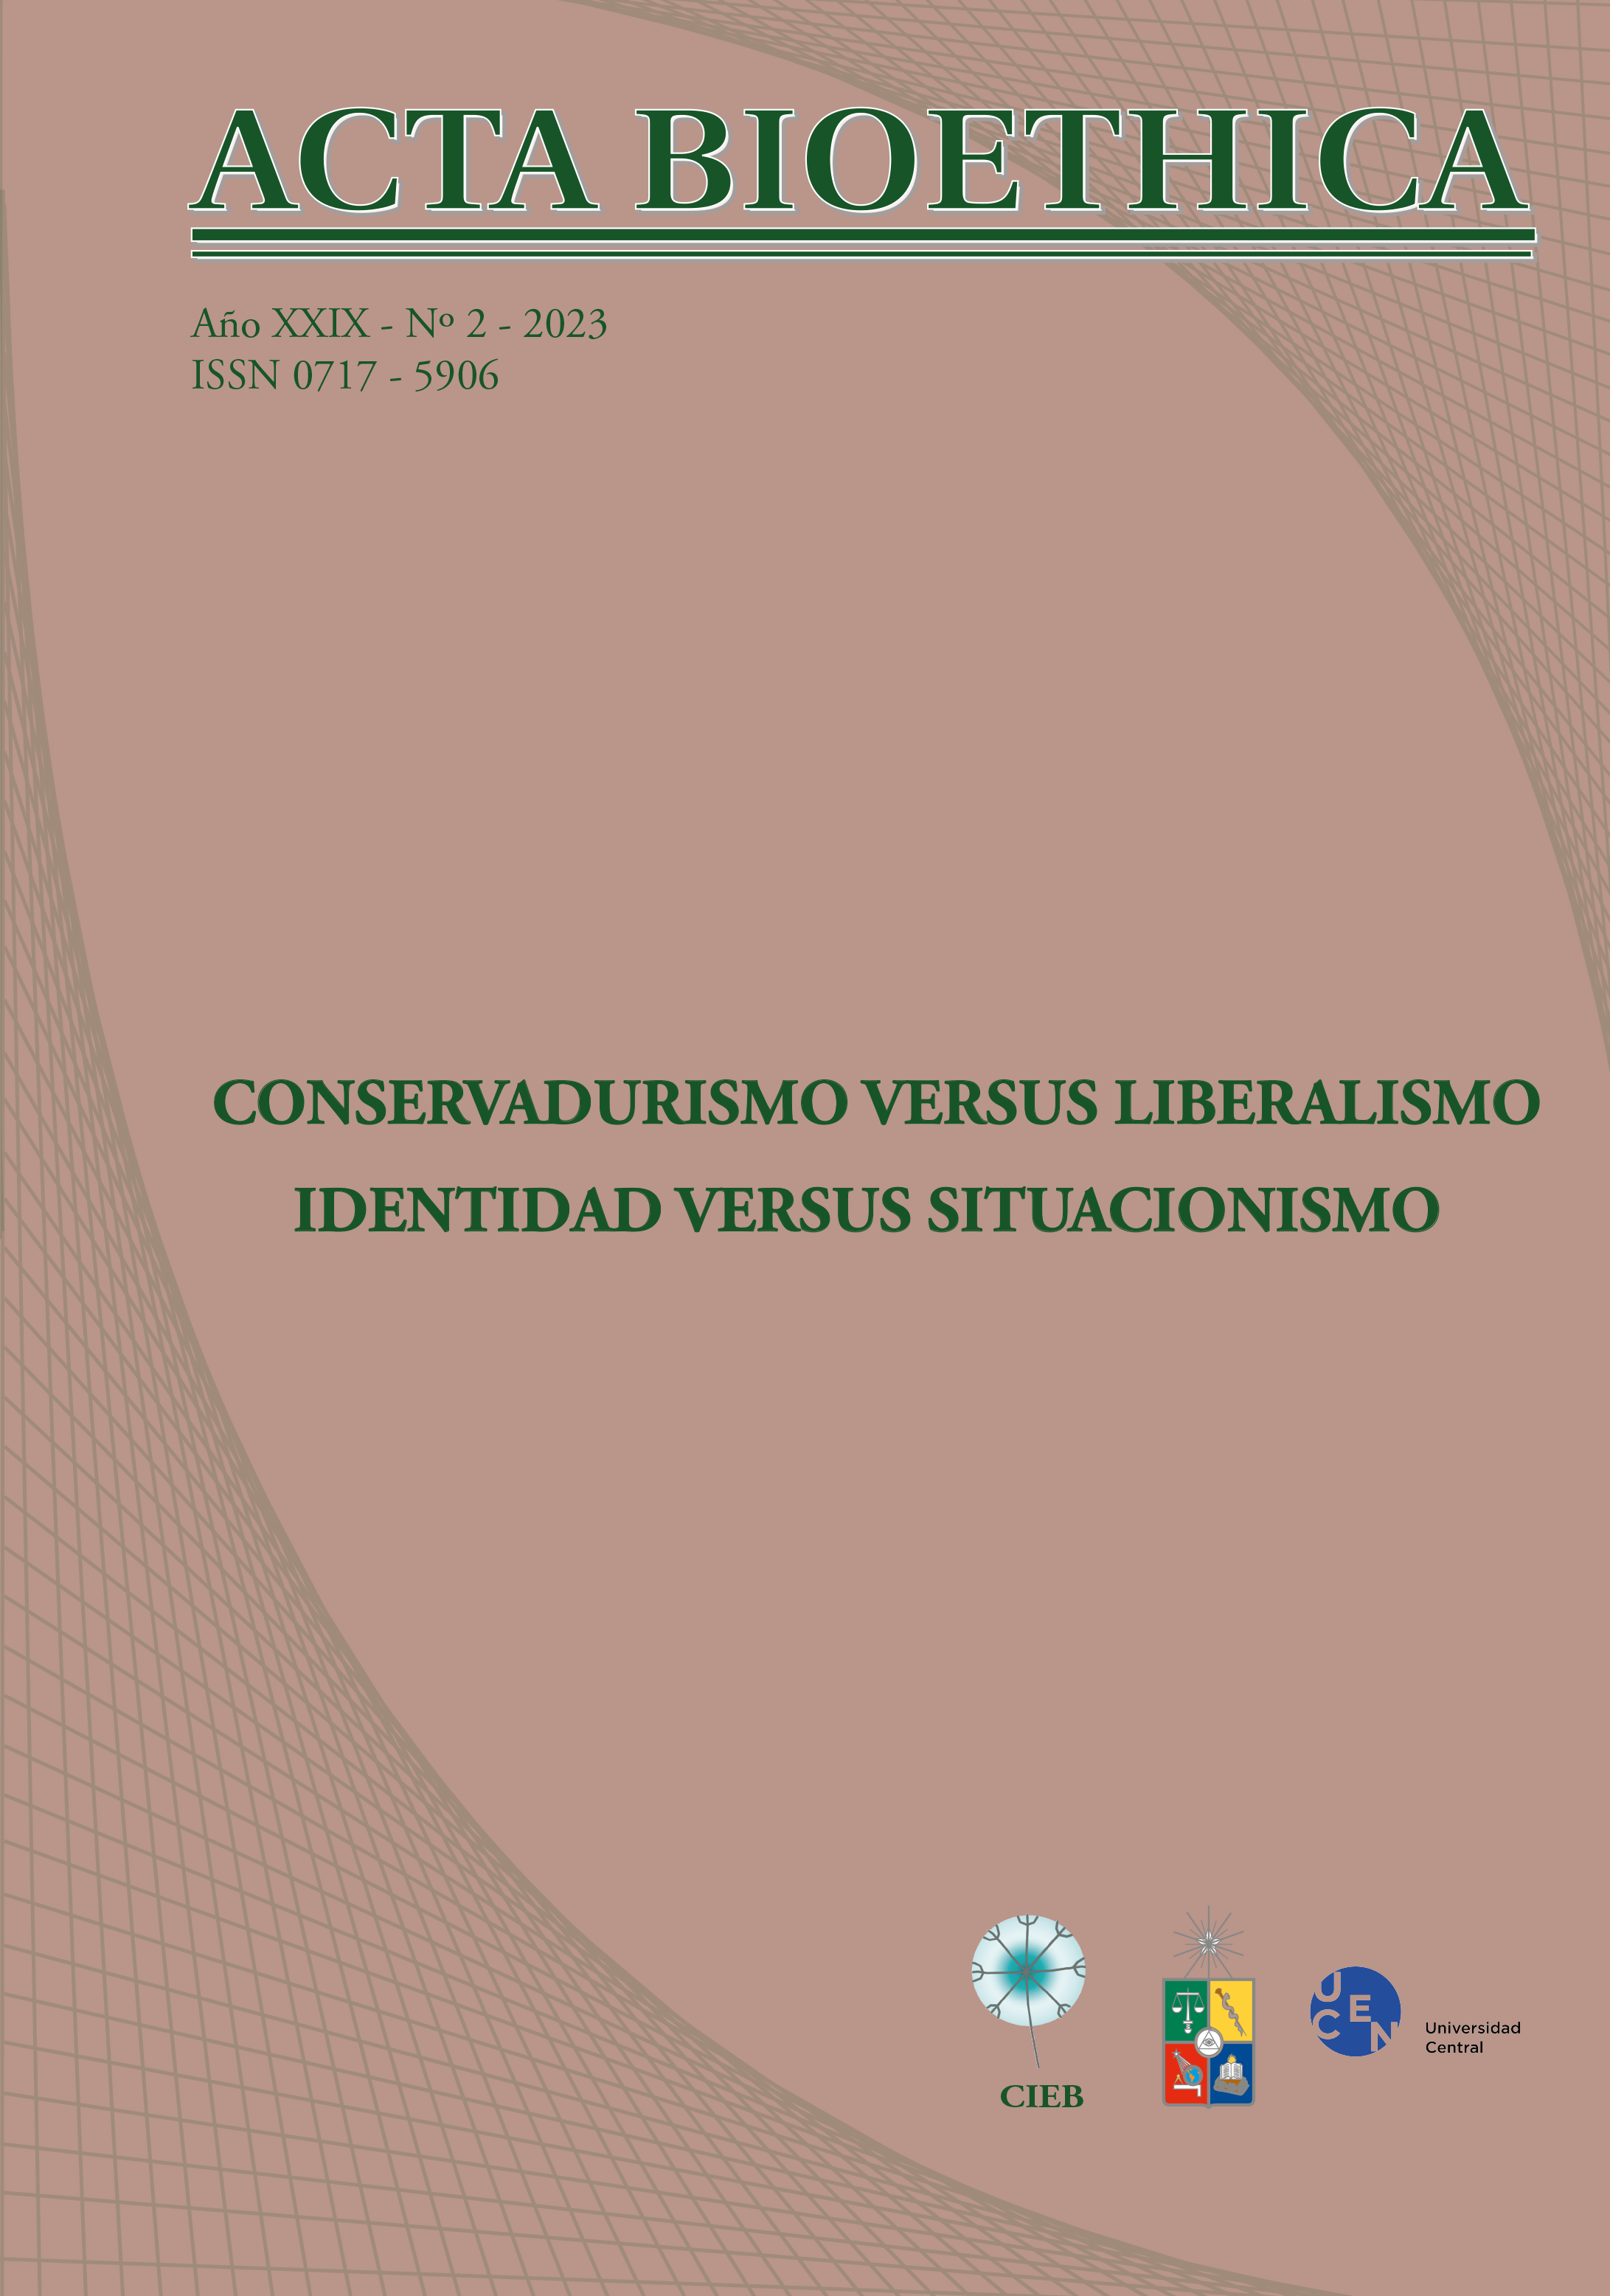 							Visualizar v. 29 n. 2 (2023): CONSERVADURISMO VERSUS LIBERALISMO. IDENTIDAD VERSUS SITUACIONISMO
						